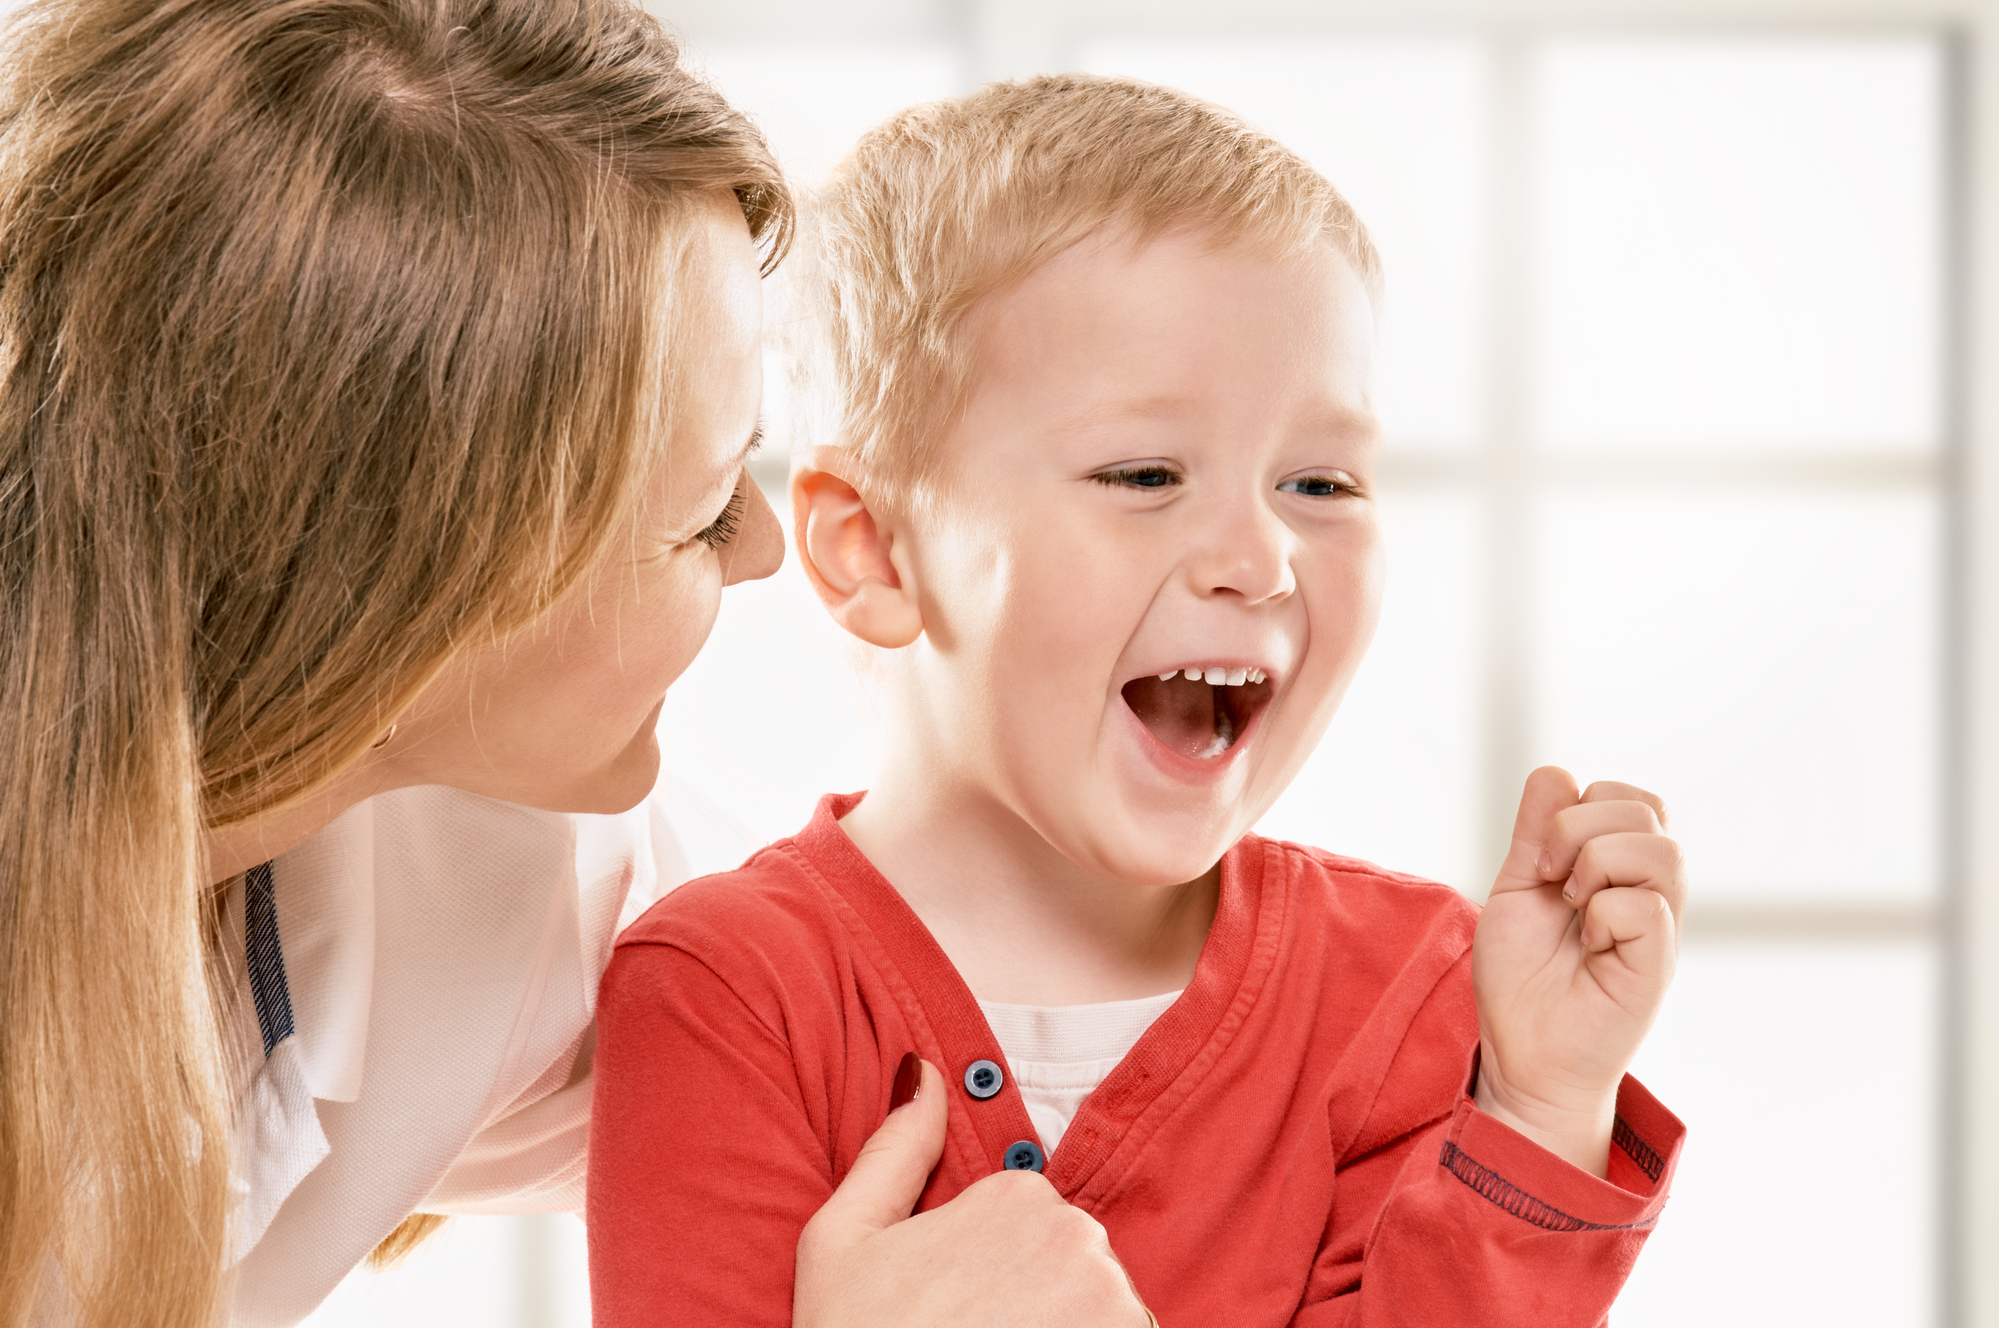  Развитие речи у ребенка. Как развивается навык, и как правильно помогать 